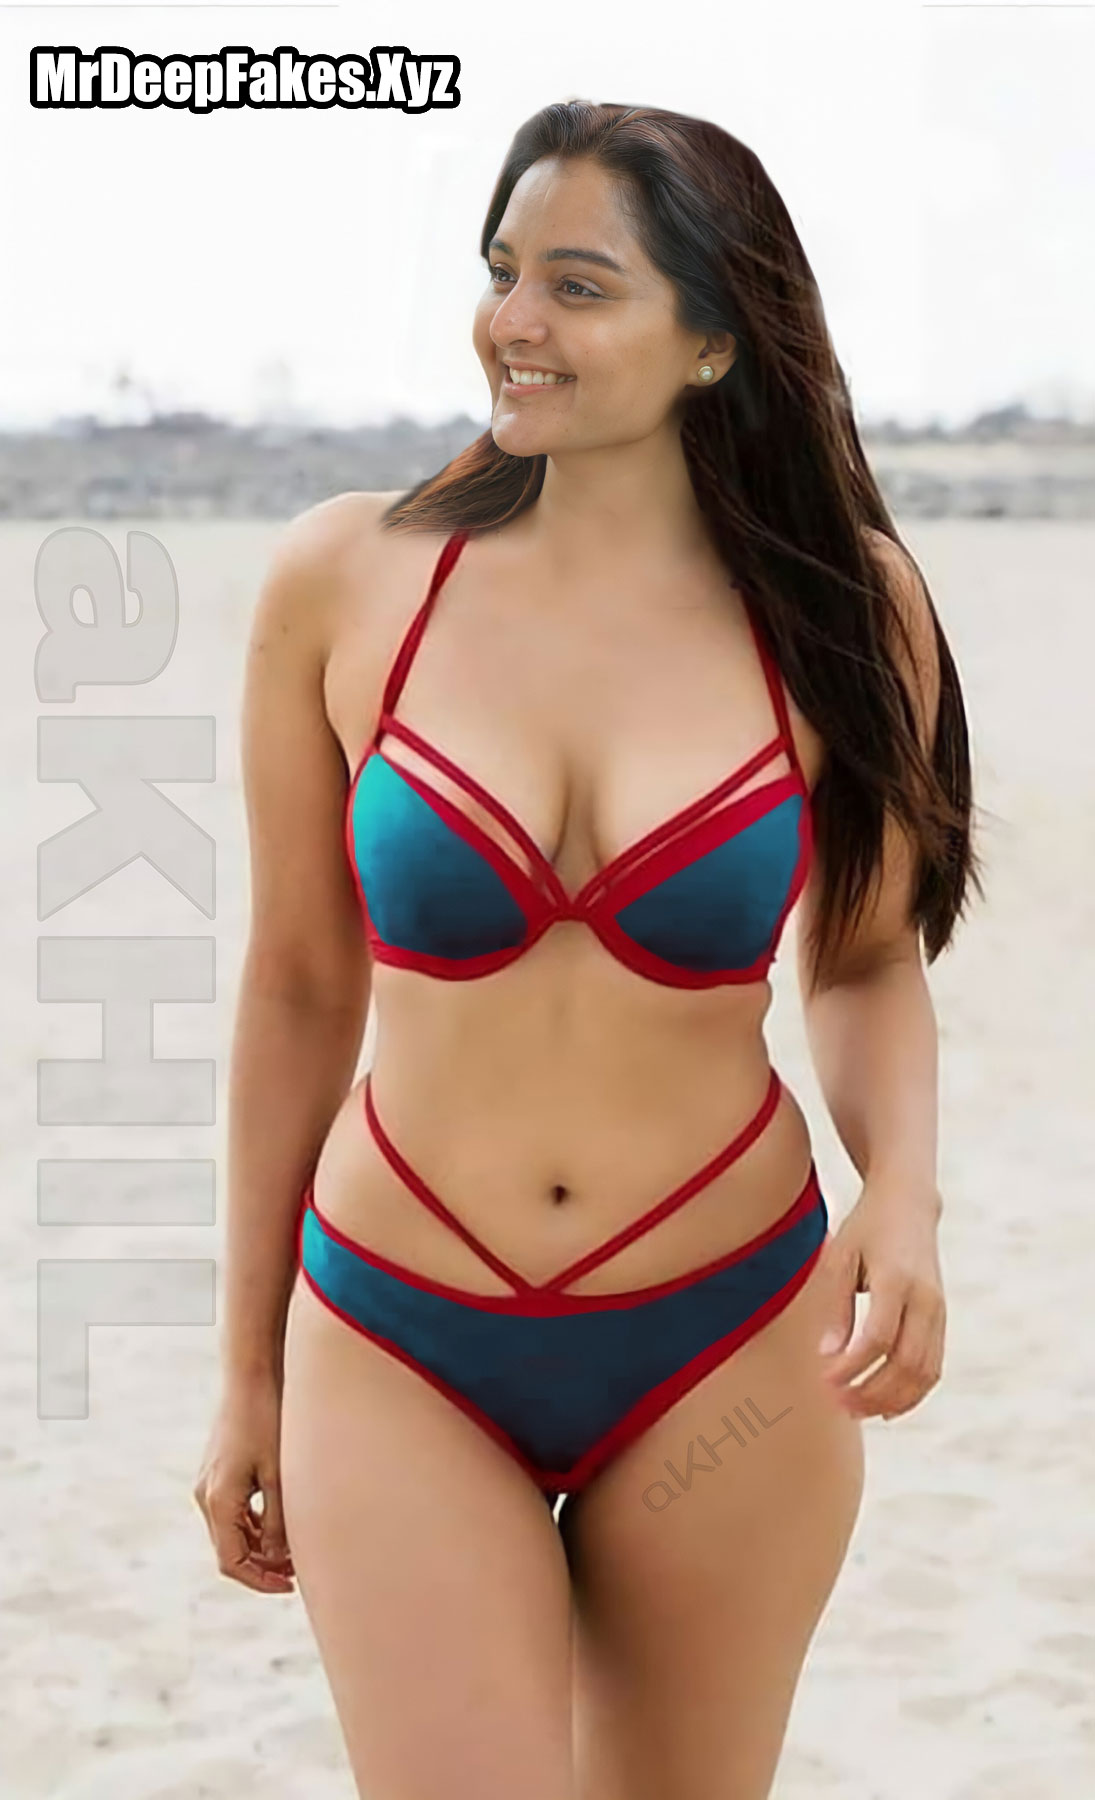 Hot Manju Warrier Nude Hot In Bikini Xxx Fakes, MrDeepFakes